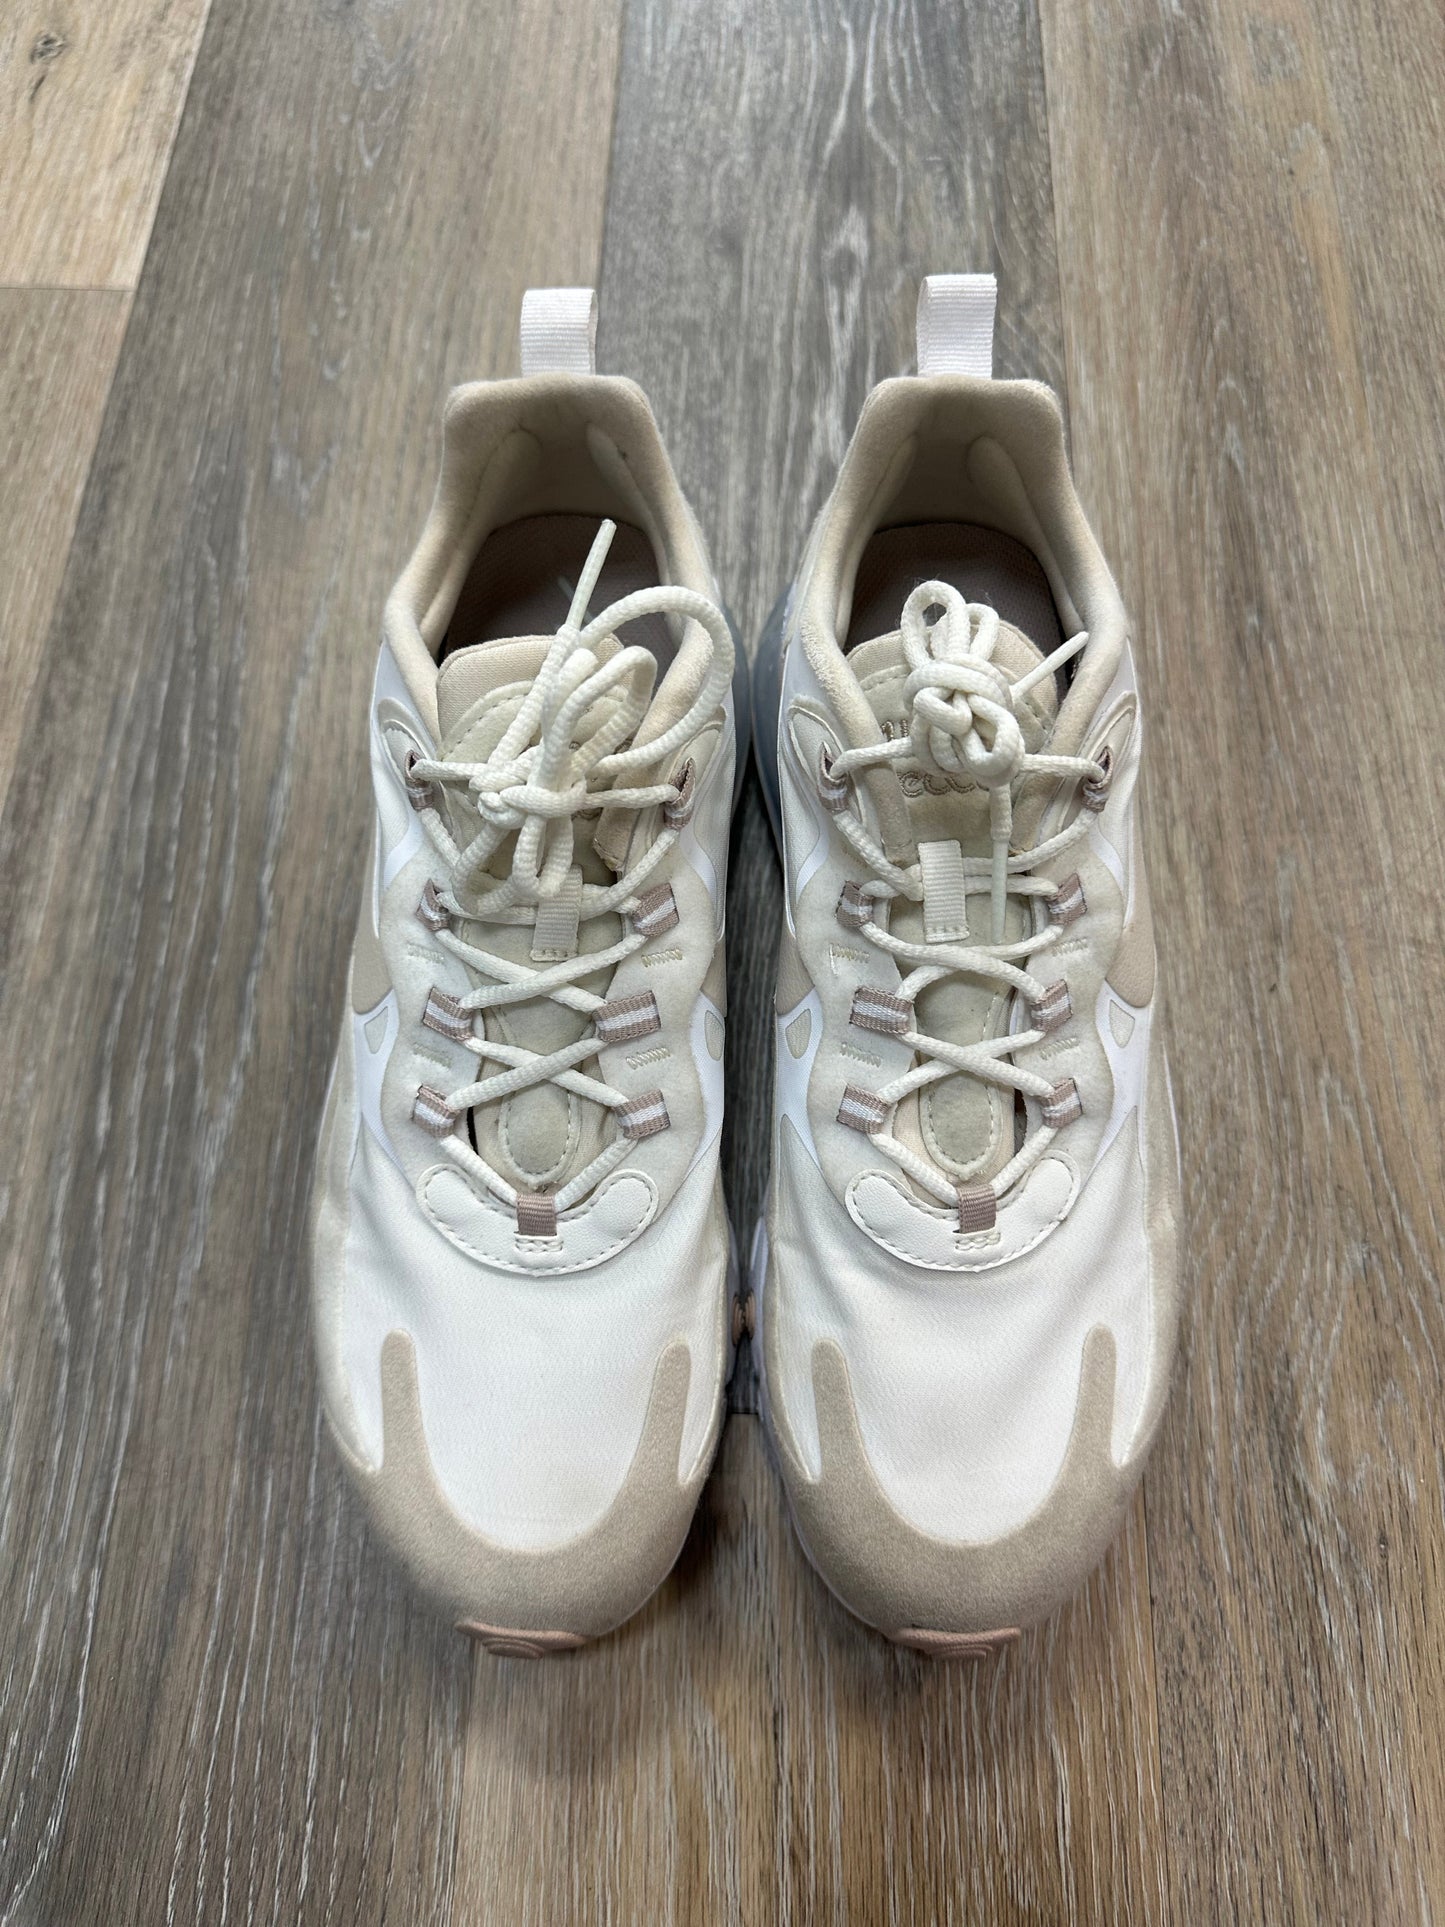 Cream Shoes Athletic Nike, Size 8